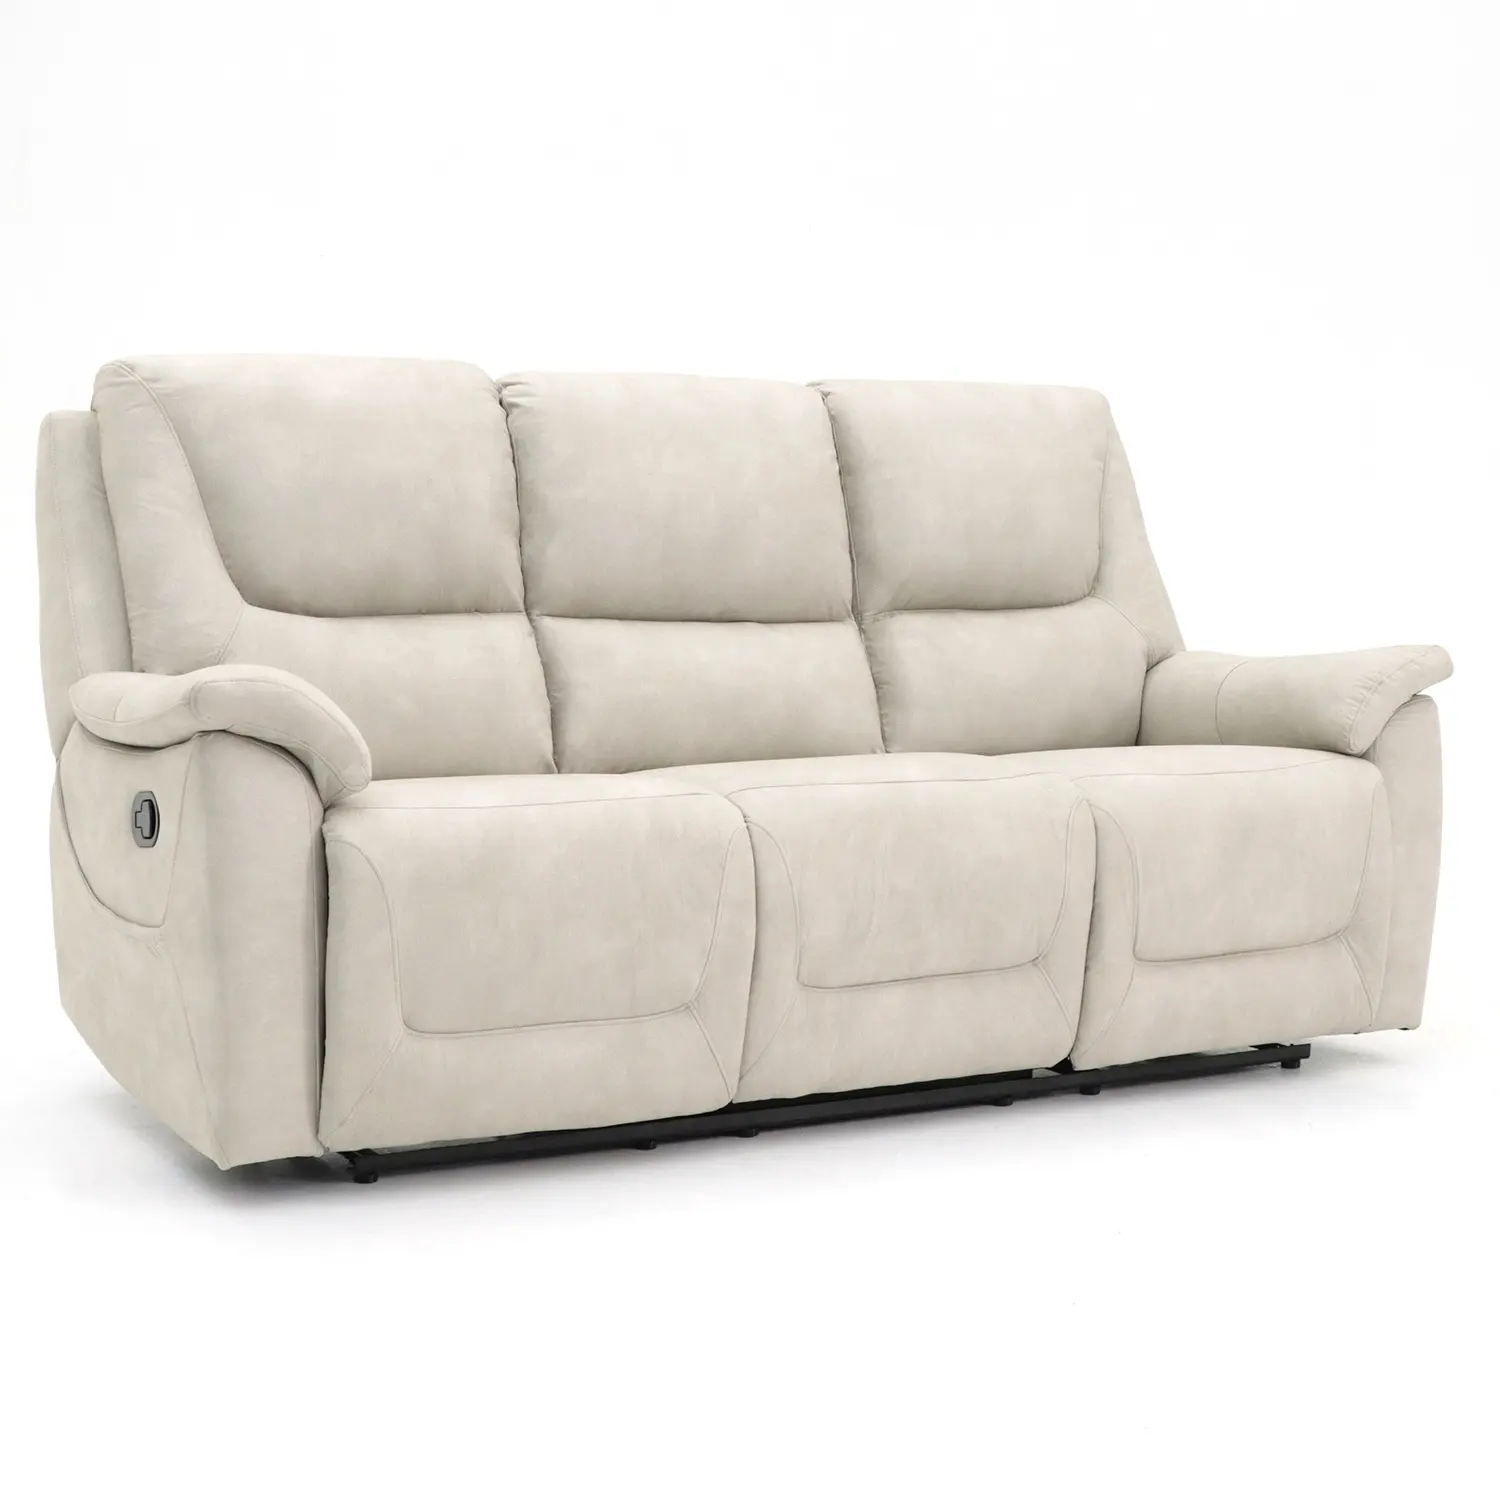 أريكة Geeksofa ميكروفايبر قماش 3 مقاعد أريكة أريكة يدوية مع حامل أكواب لينة PU لغرفة المعيشة